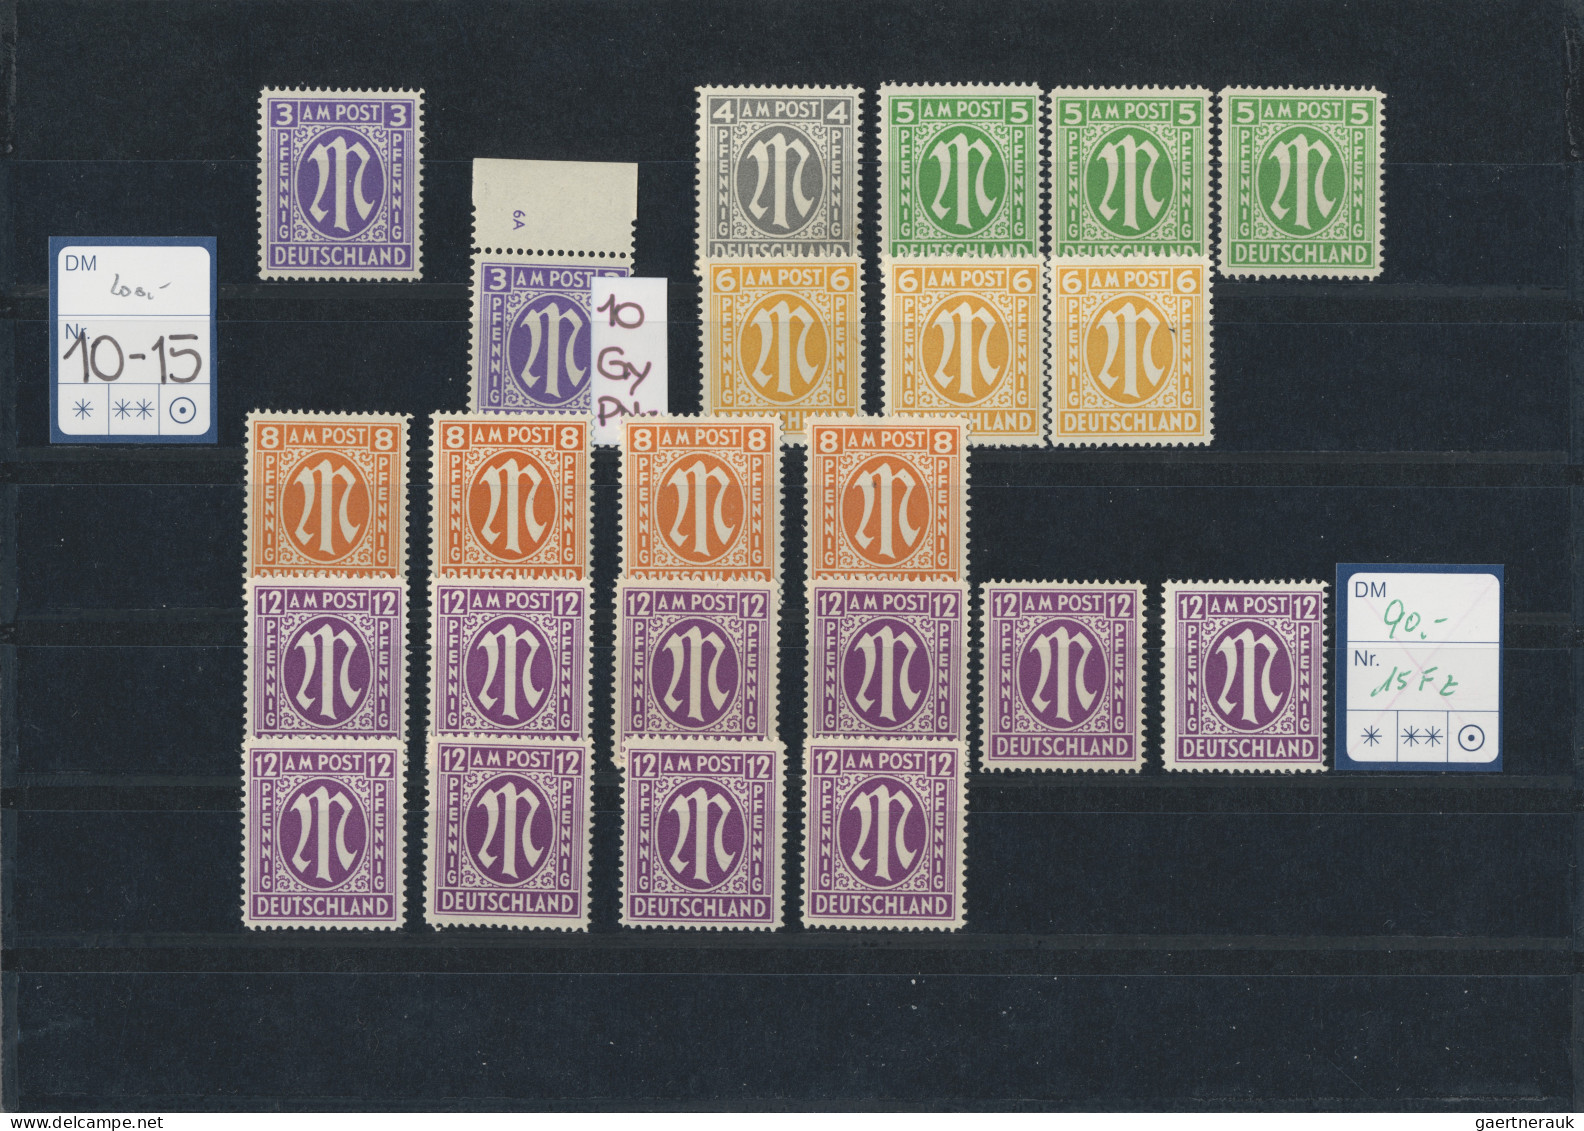 Bizone: 1945/1946, AM-Post Englischer Druck, postfrische Spezialpartie mit ca. 4